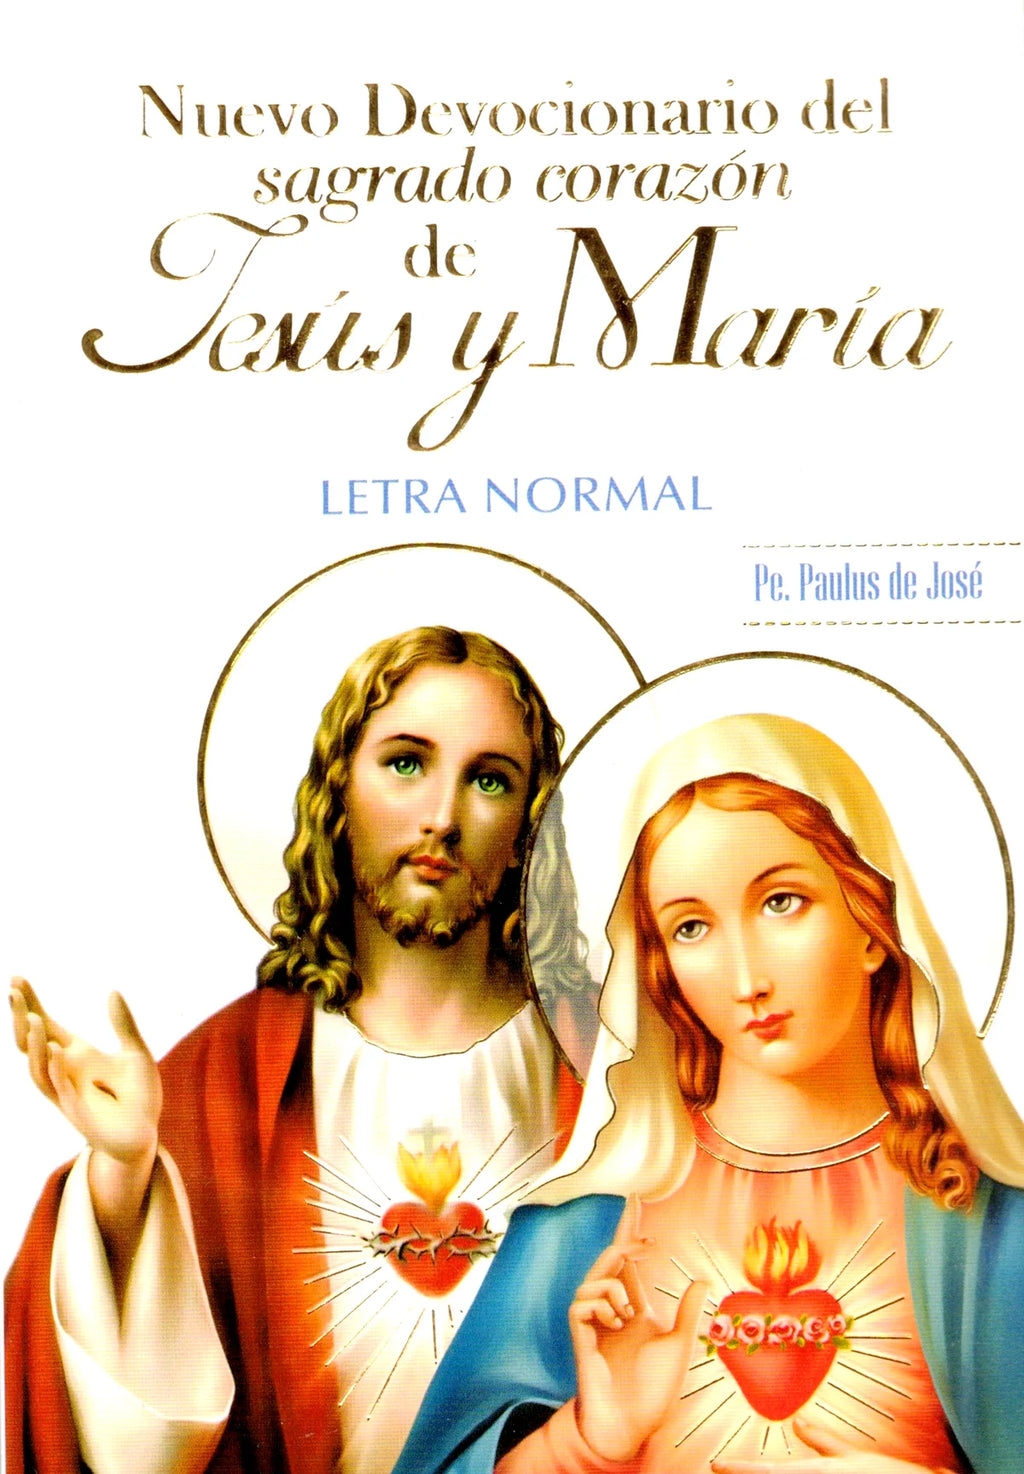 Nuevo Devocionario del Sagrado Corazón de Jesús y de María - Letra Normal - Unique Catholic Gifts